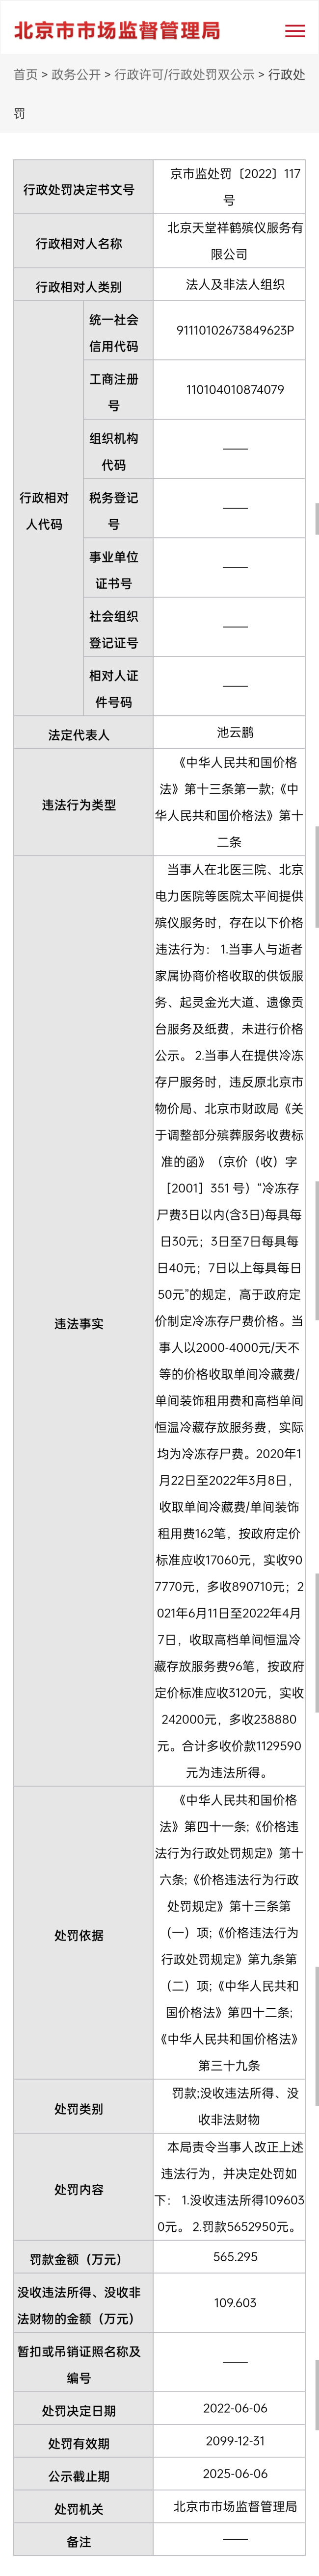 北京天价殡葬费涉事公司被罚565万